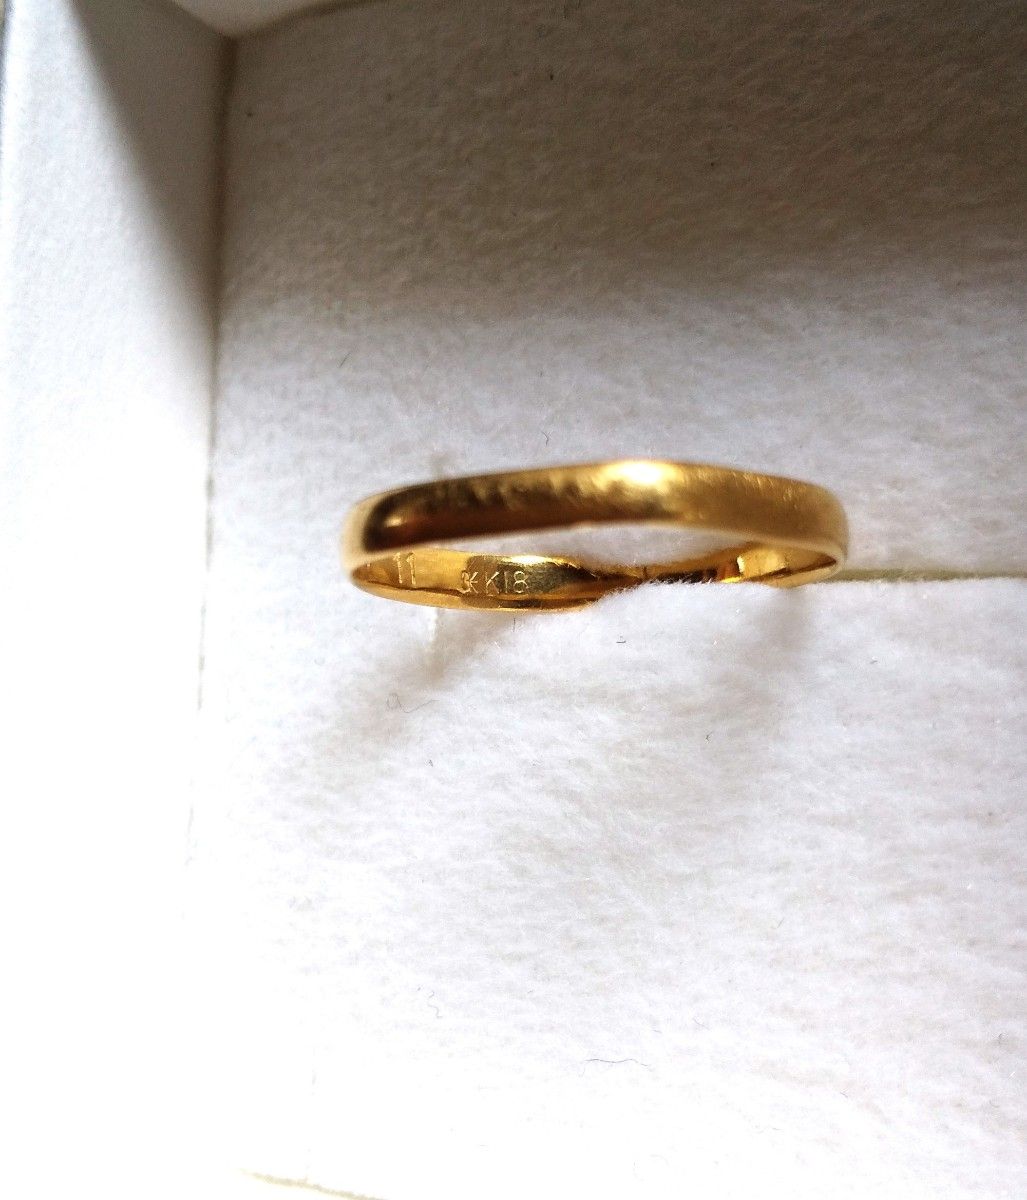 18金 リング 結婚指輪 18金 11号 イエローゴールド 金 貴金属 アクセサリー k18 刻印あり 指輪 ゴールドリング